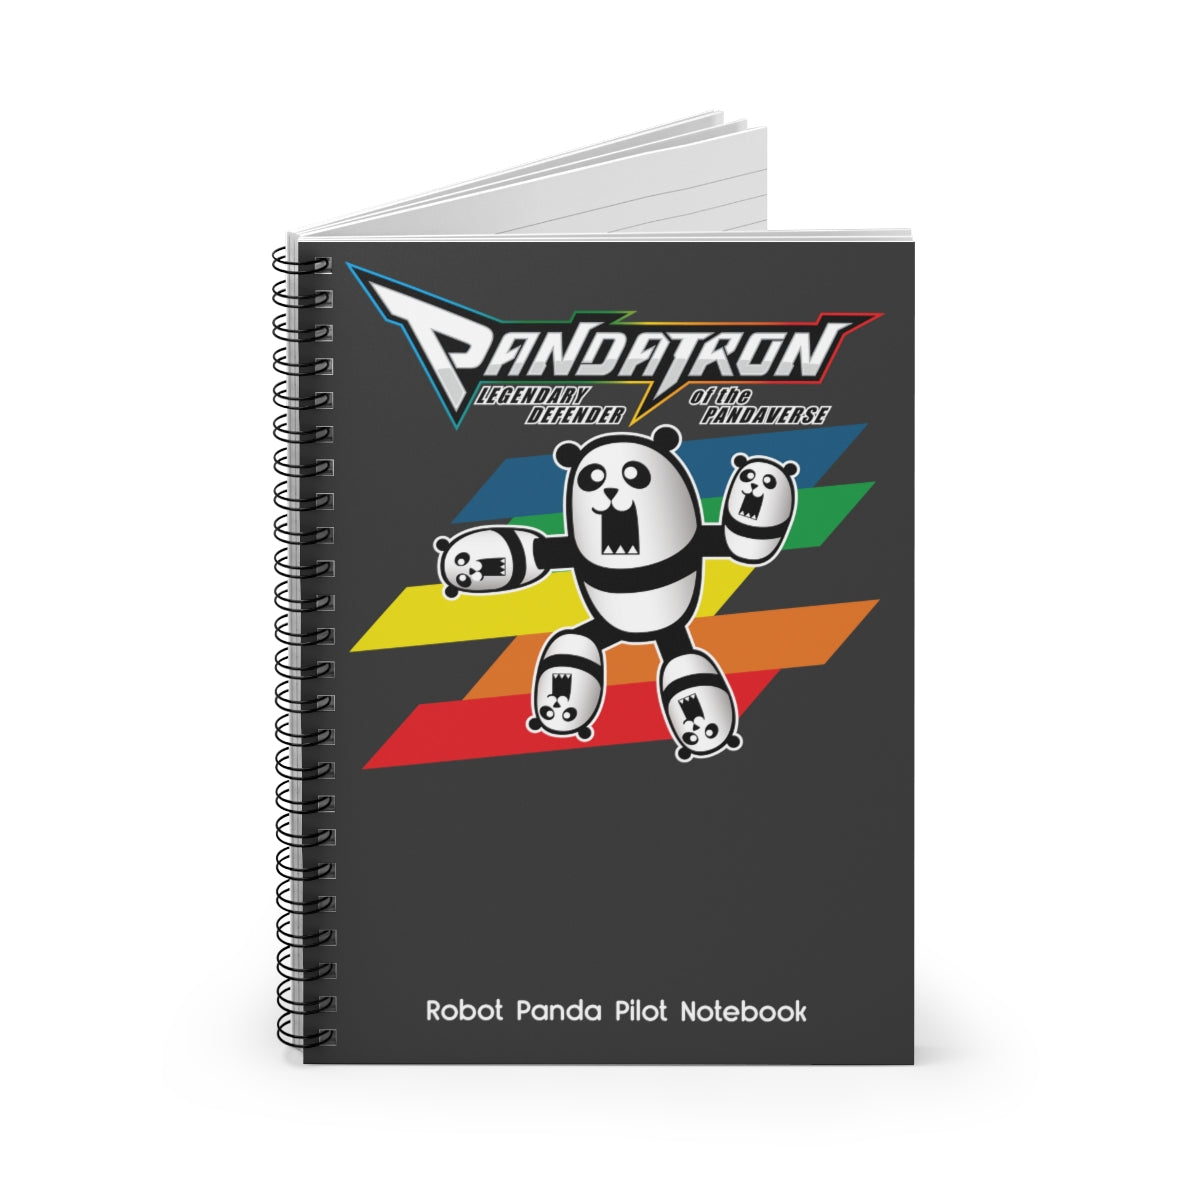 Pandatron Utility Notebook Evil Laboratory